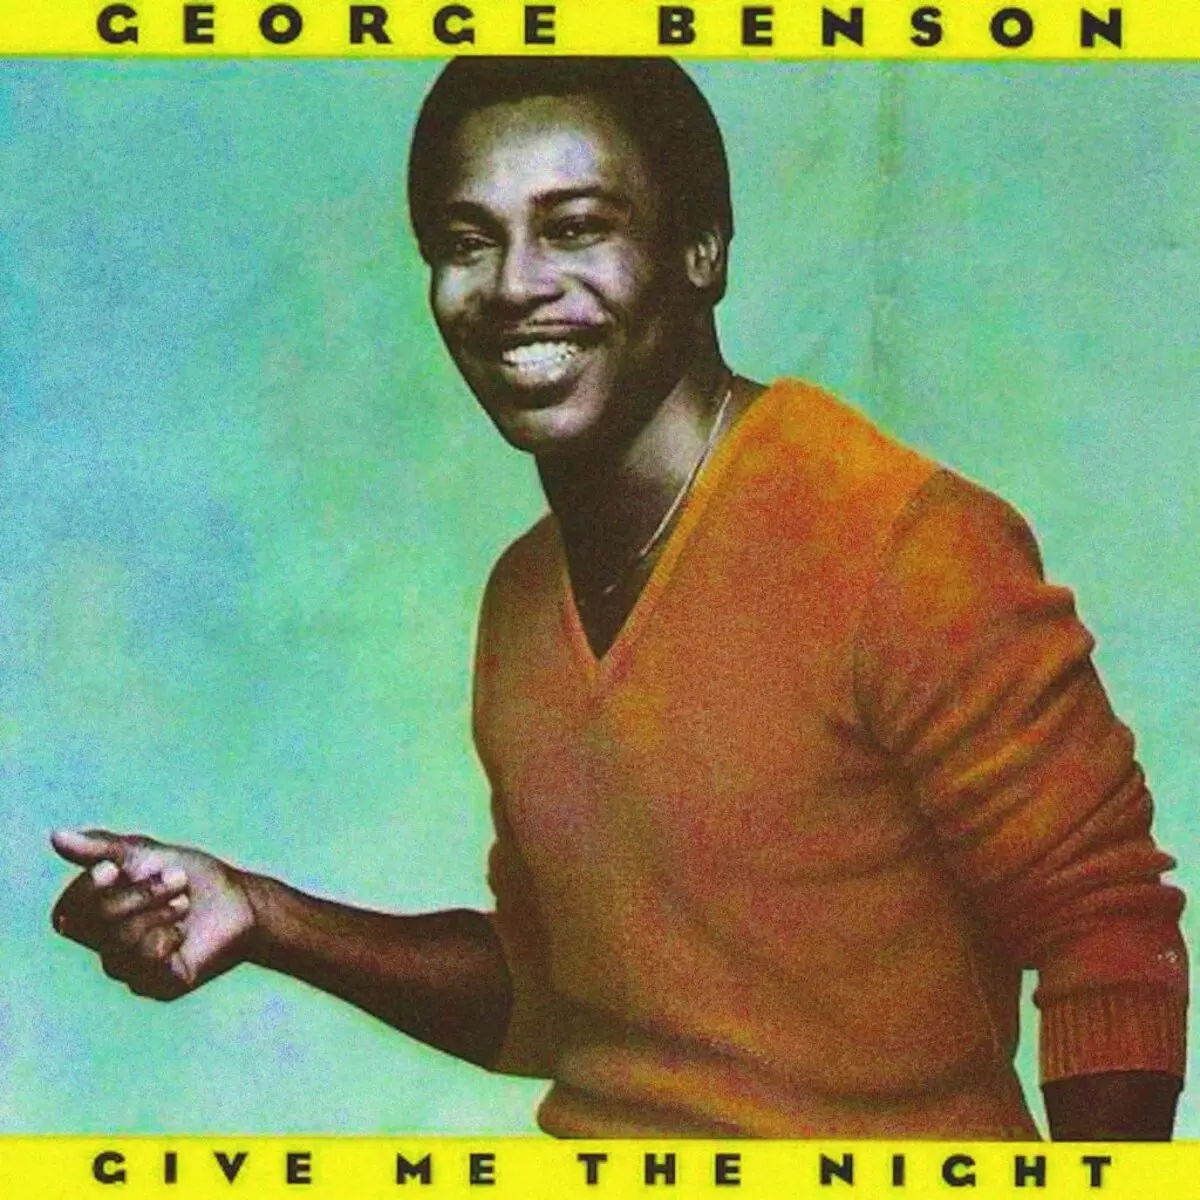 Dă-mi noaptea (1980) - George Benson - Totul despre albumul ...